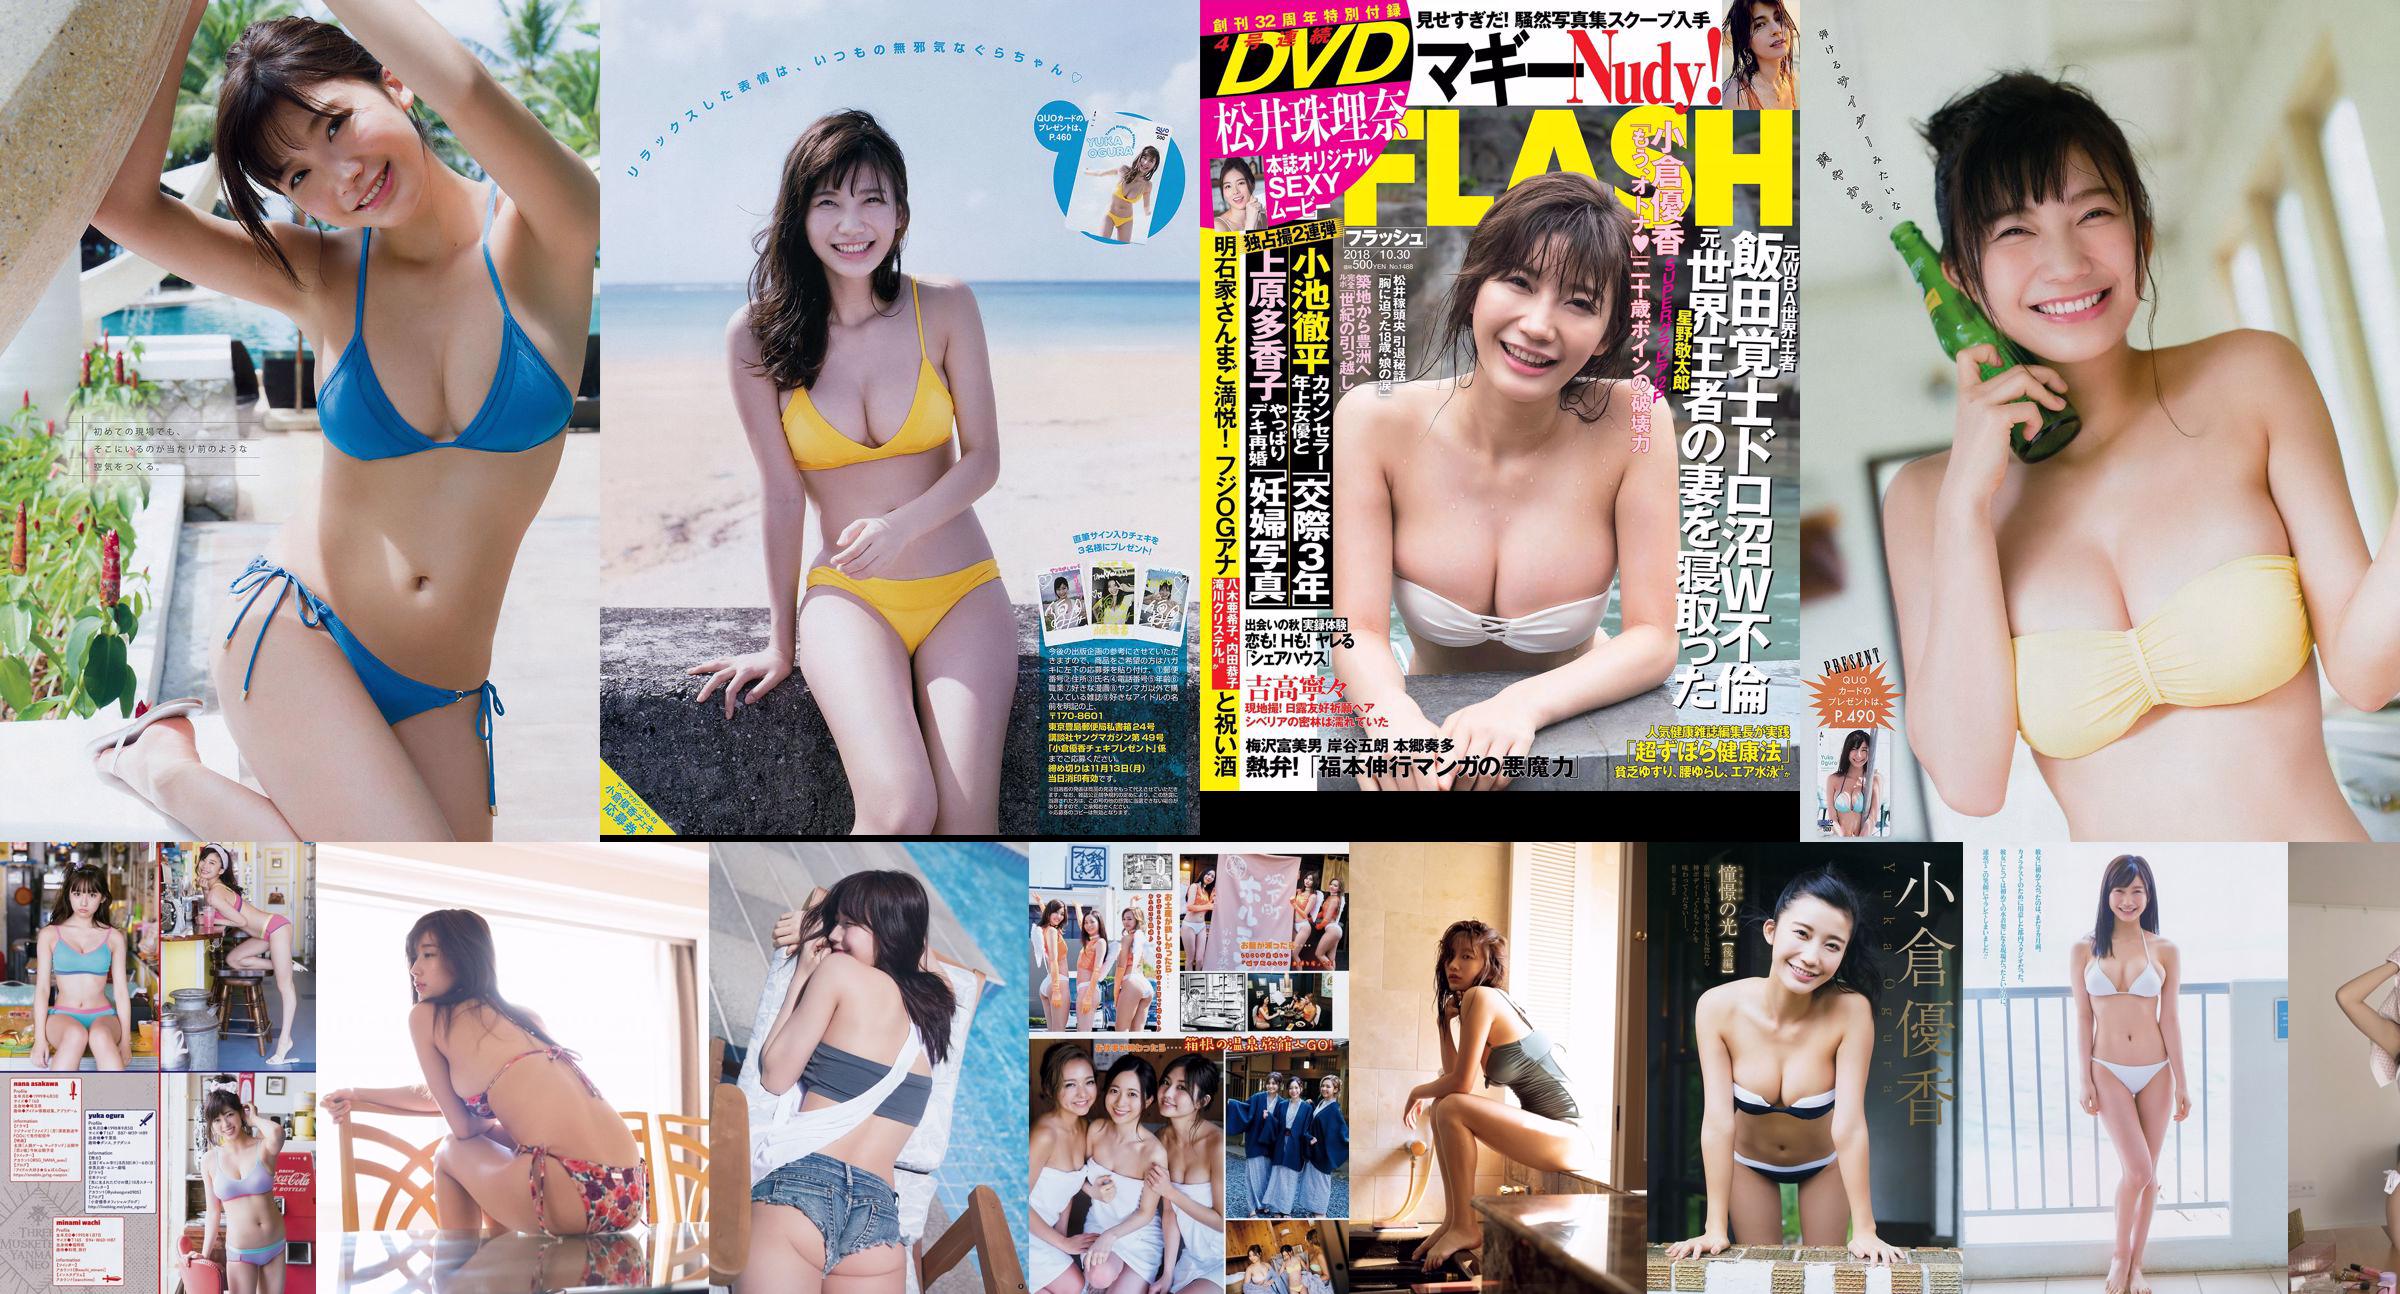 [FLASH] Jurina Matsui Deguchi Arisa Natsumi Hirajima Yui Imaizumi 2018.10.16-23 Foto No.36ebdd Halaman 1